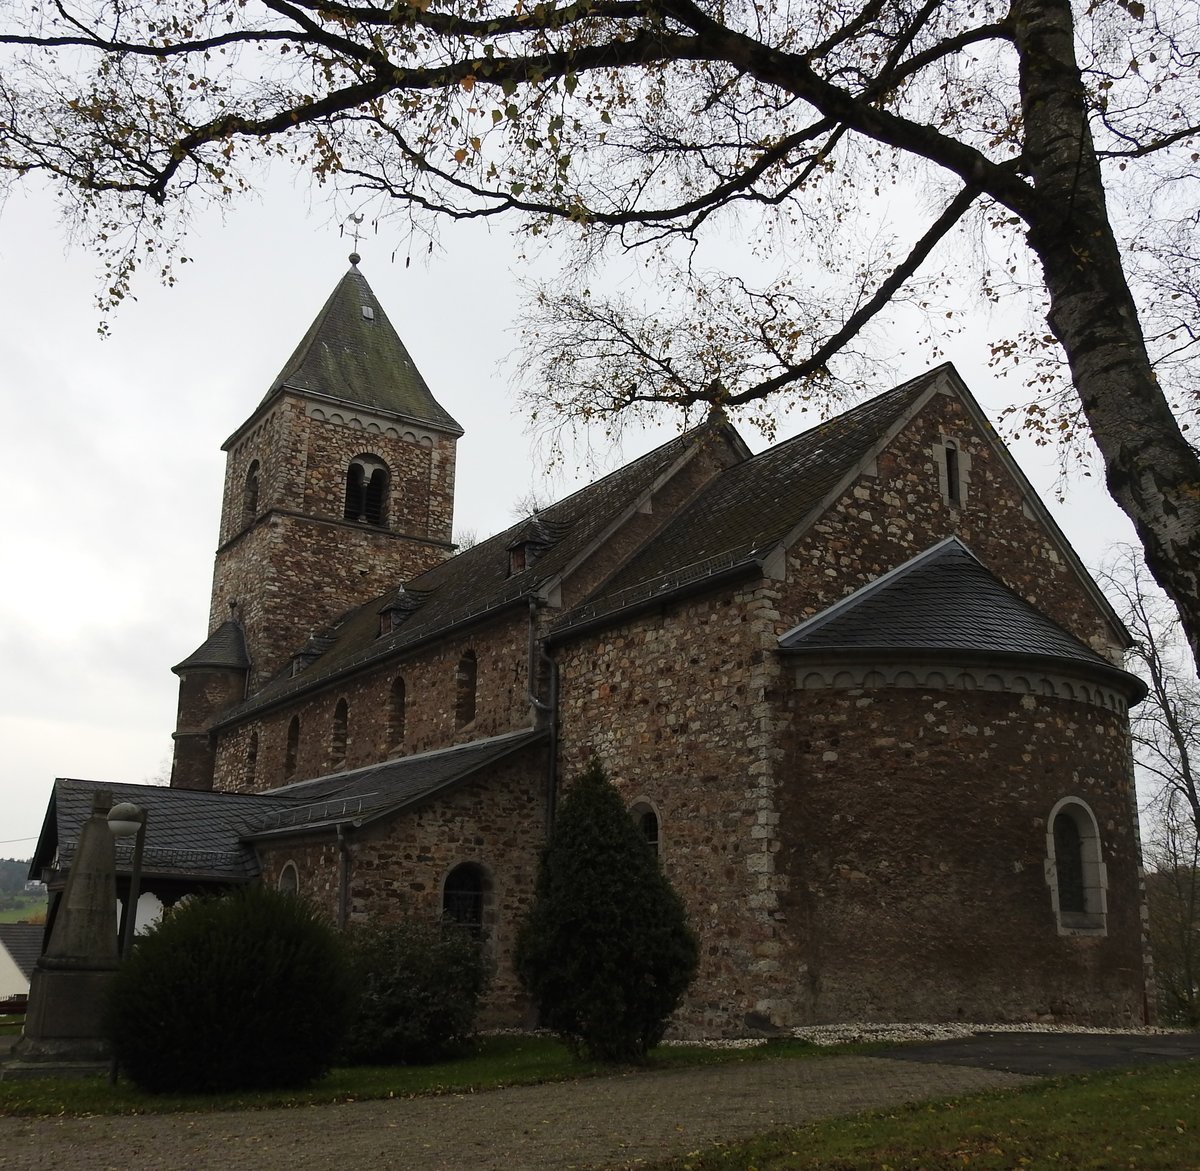 AN DER  RAIFFEISEN-STRAE -BIRNBACH/WW-EV. PFARRKIRCHE
Die ev. Pfarrkirche im kleinen Westerwaldort BIRNBACH,aus dem 13. Jahrhundert stammend,wurde auch von
F.W. RAIFFEISEN zu den Gottesdiensten aufgesucht-sein erstes Kind wurde hier getauft...am 6.11.2017